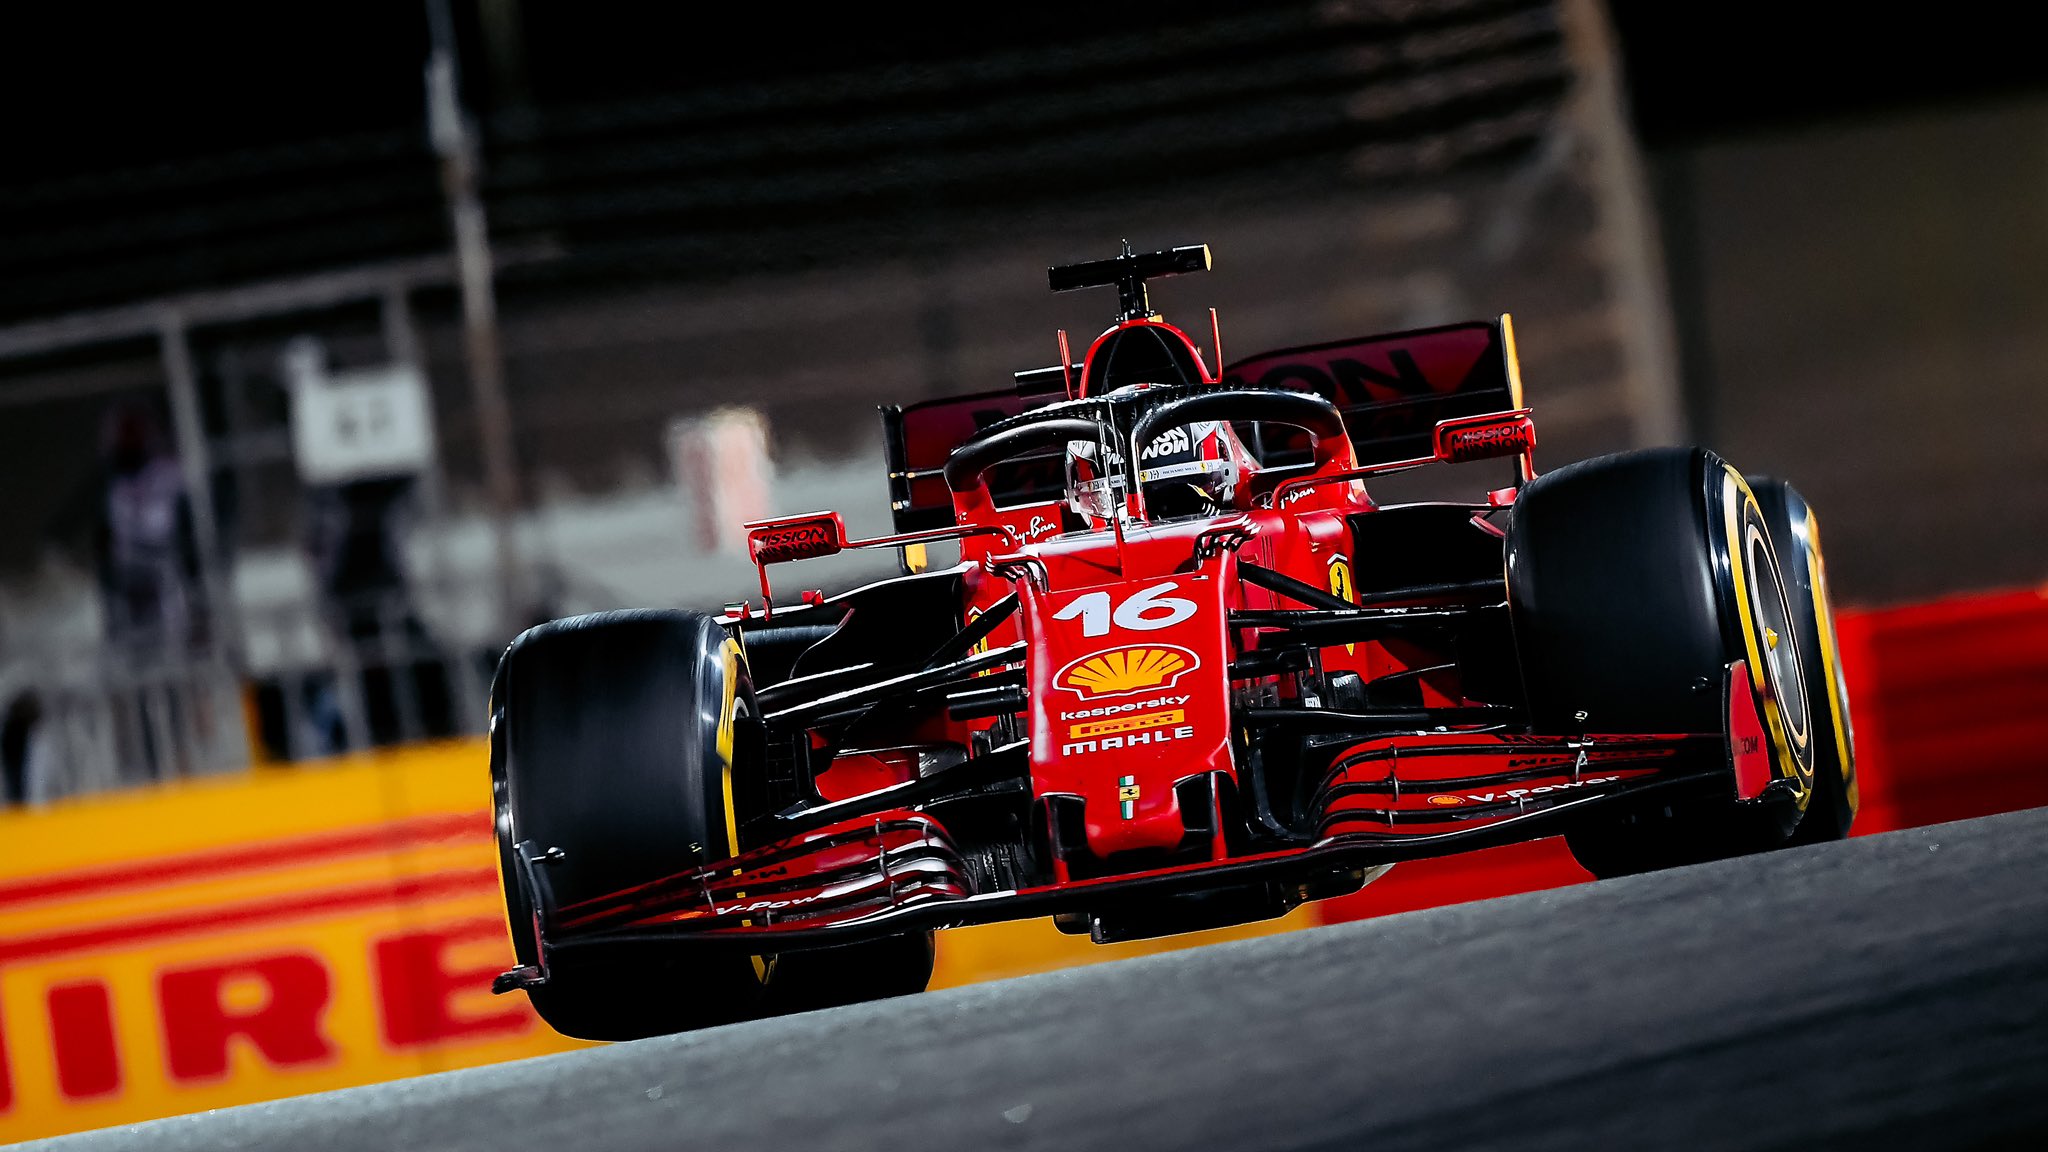 Gp Bahrain 2021-Analisi Strategica: Mercedes gioca d'anticipo, scelte singolari per Perez e Vettel